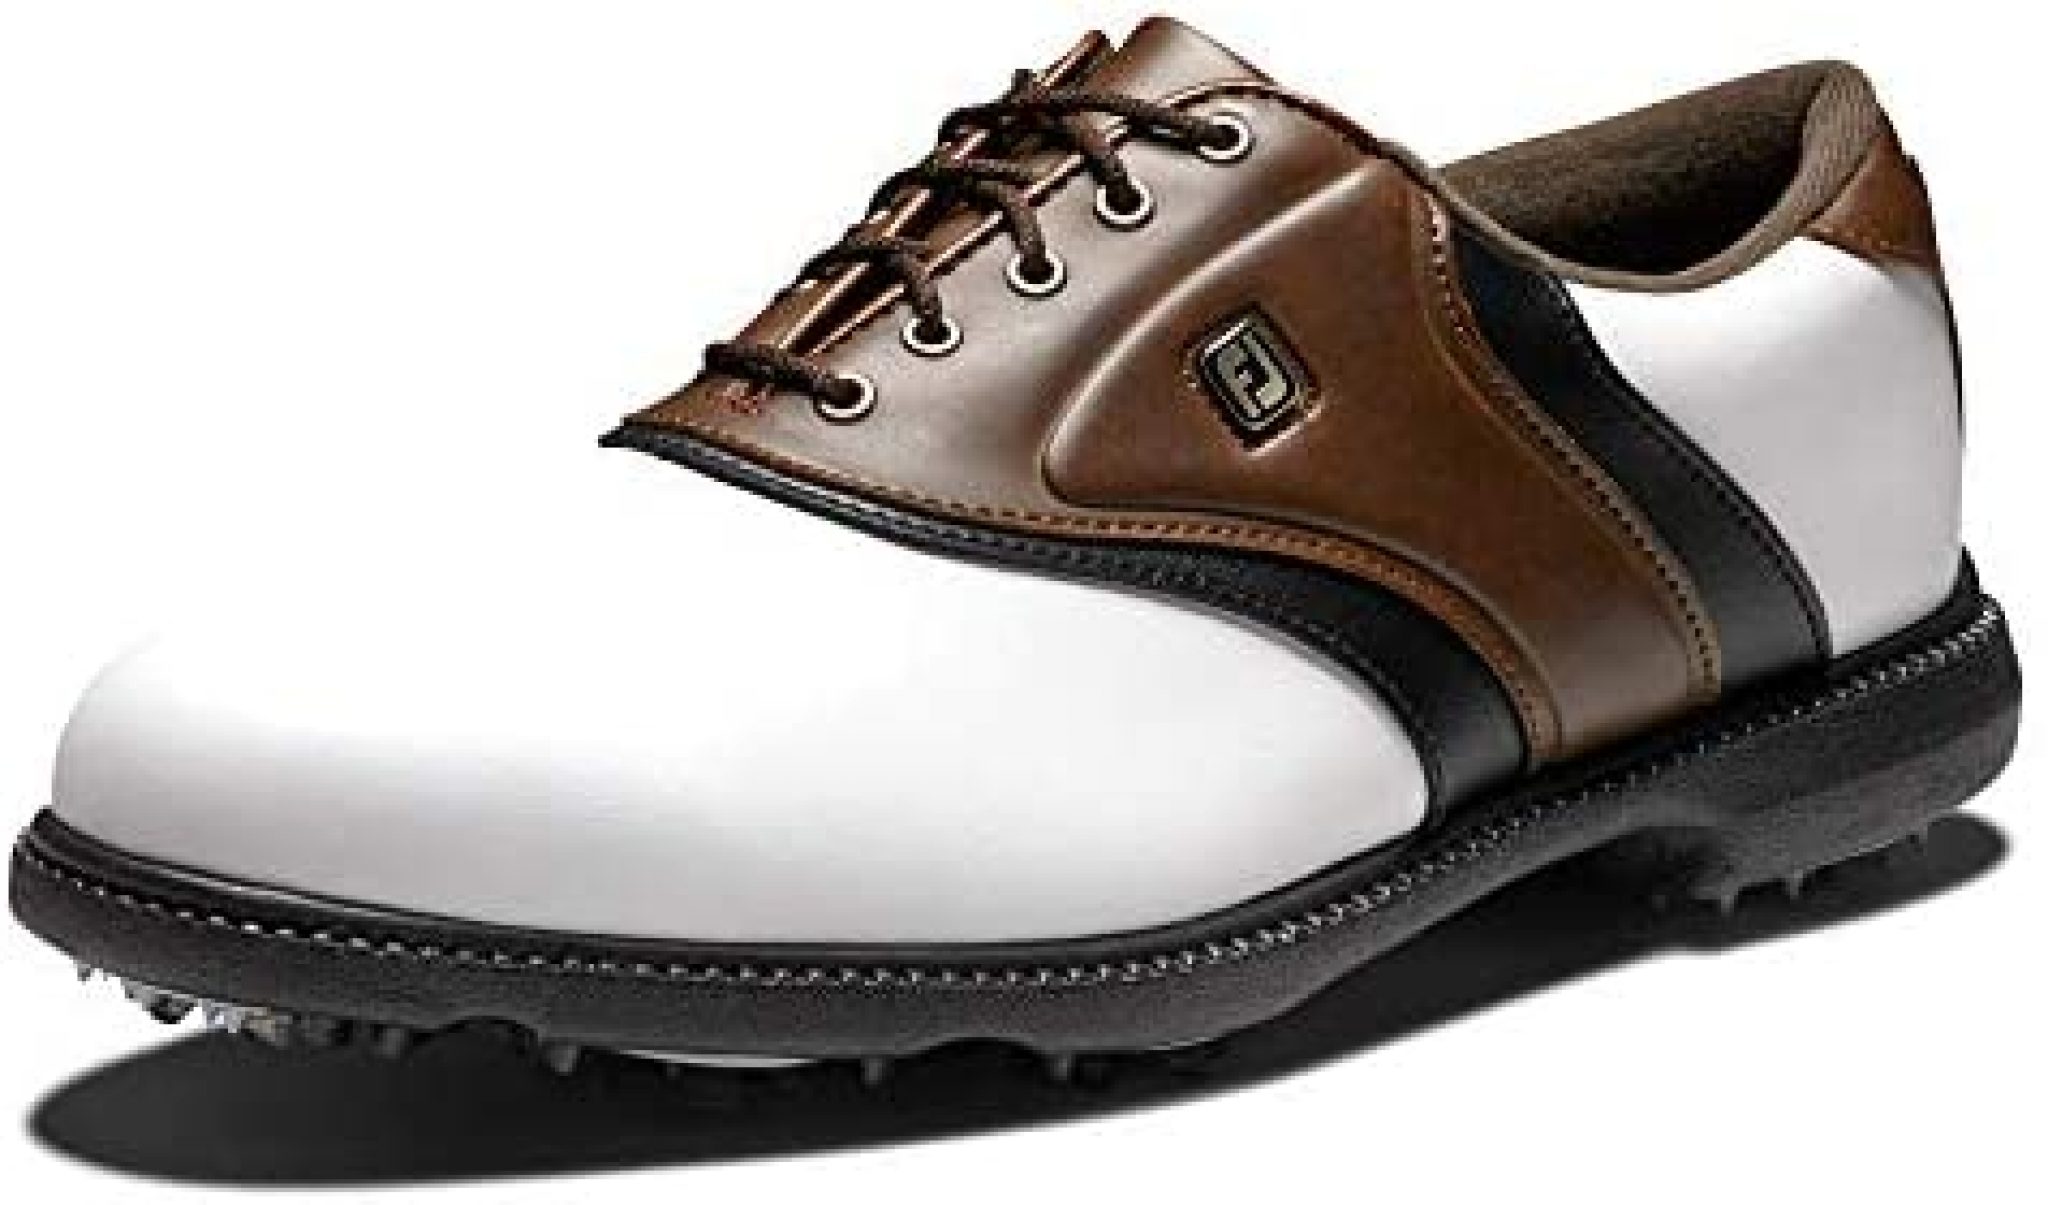 FootJoy Men's Fj Originals Golf Shoes - Golf Products Review